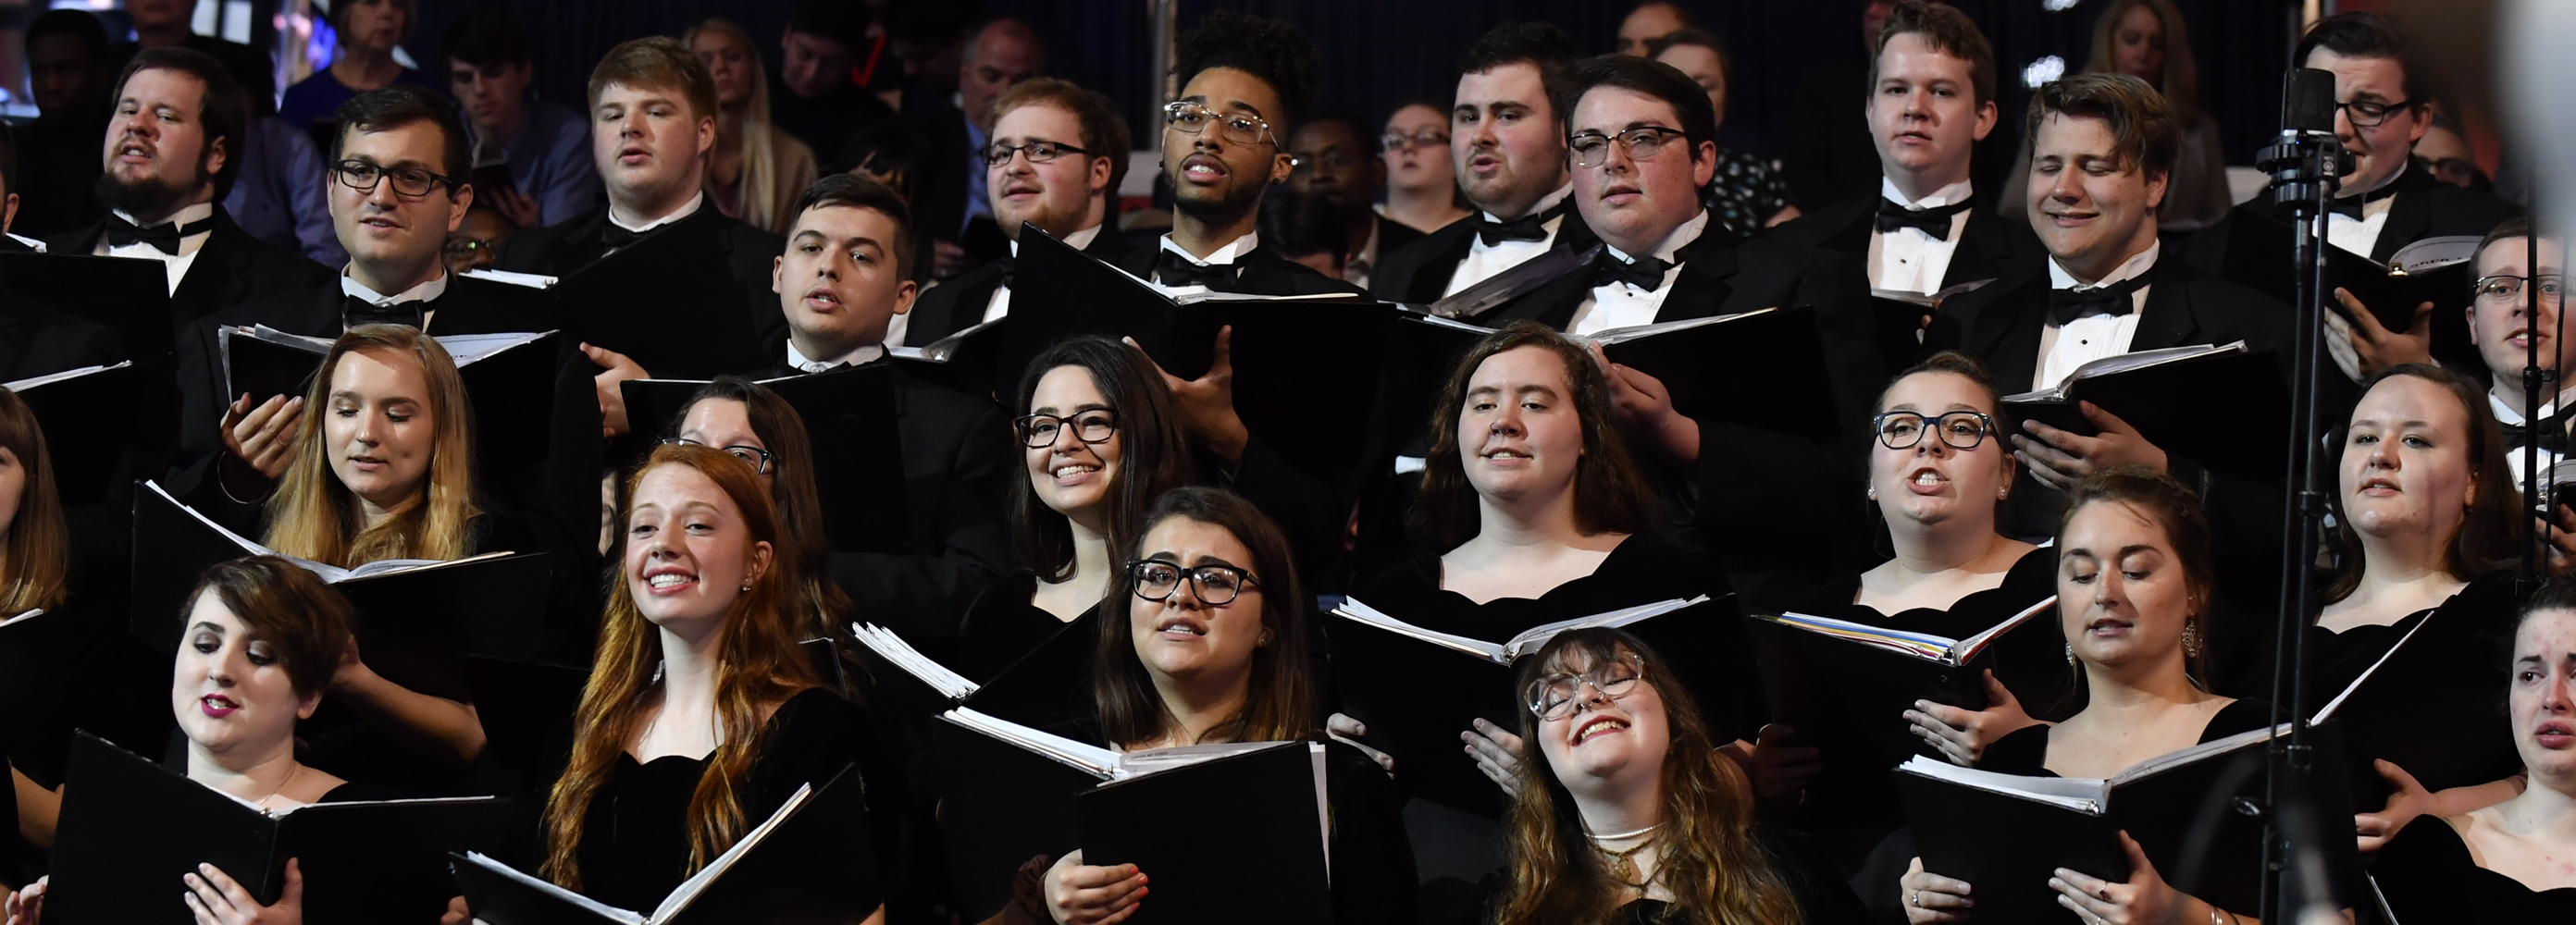 USI choir performing at Inauguration 2019